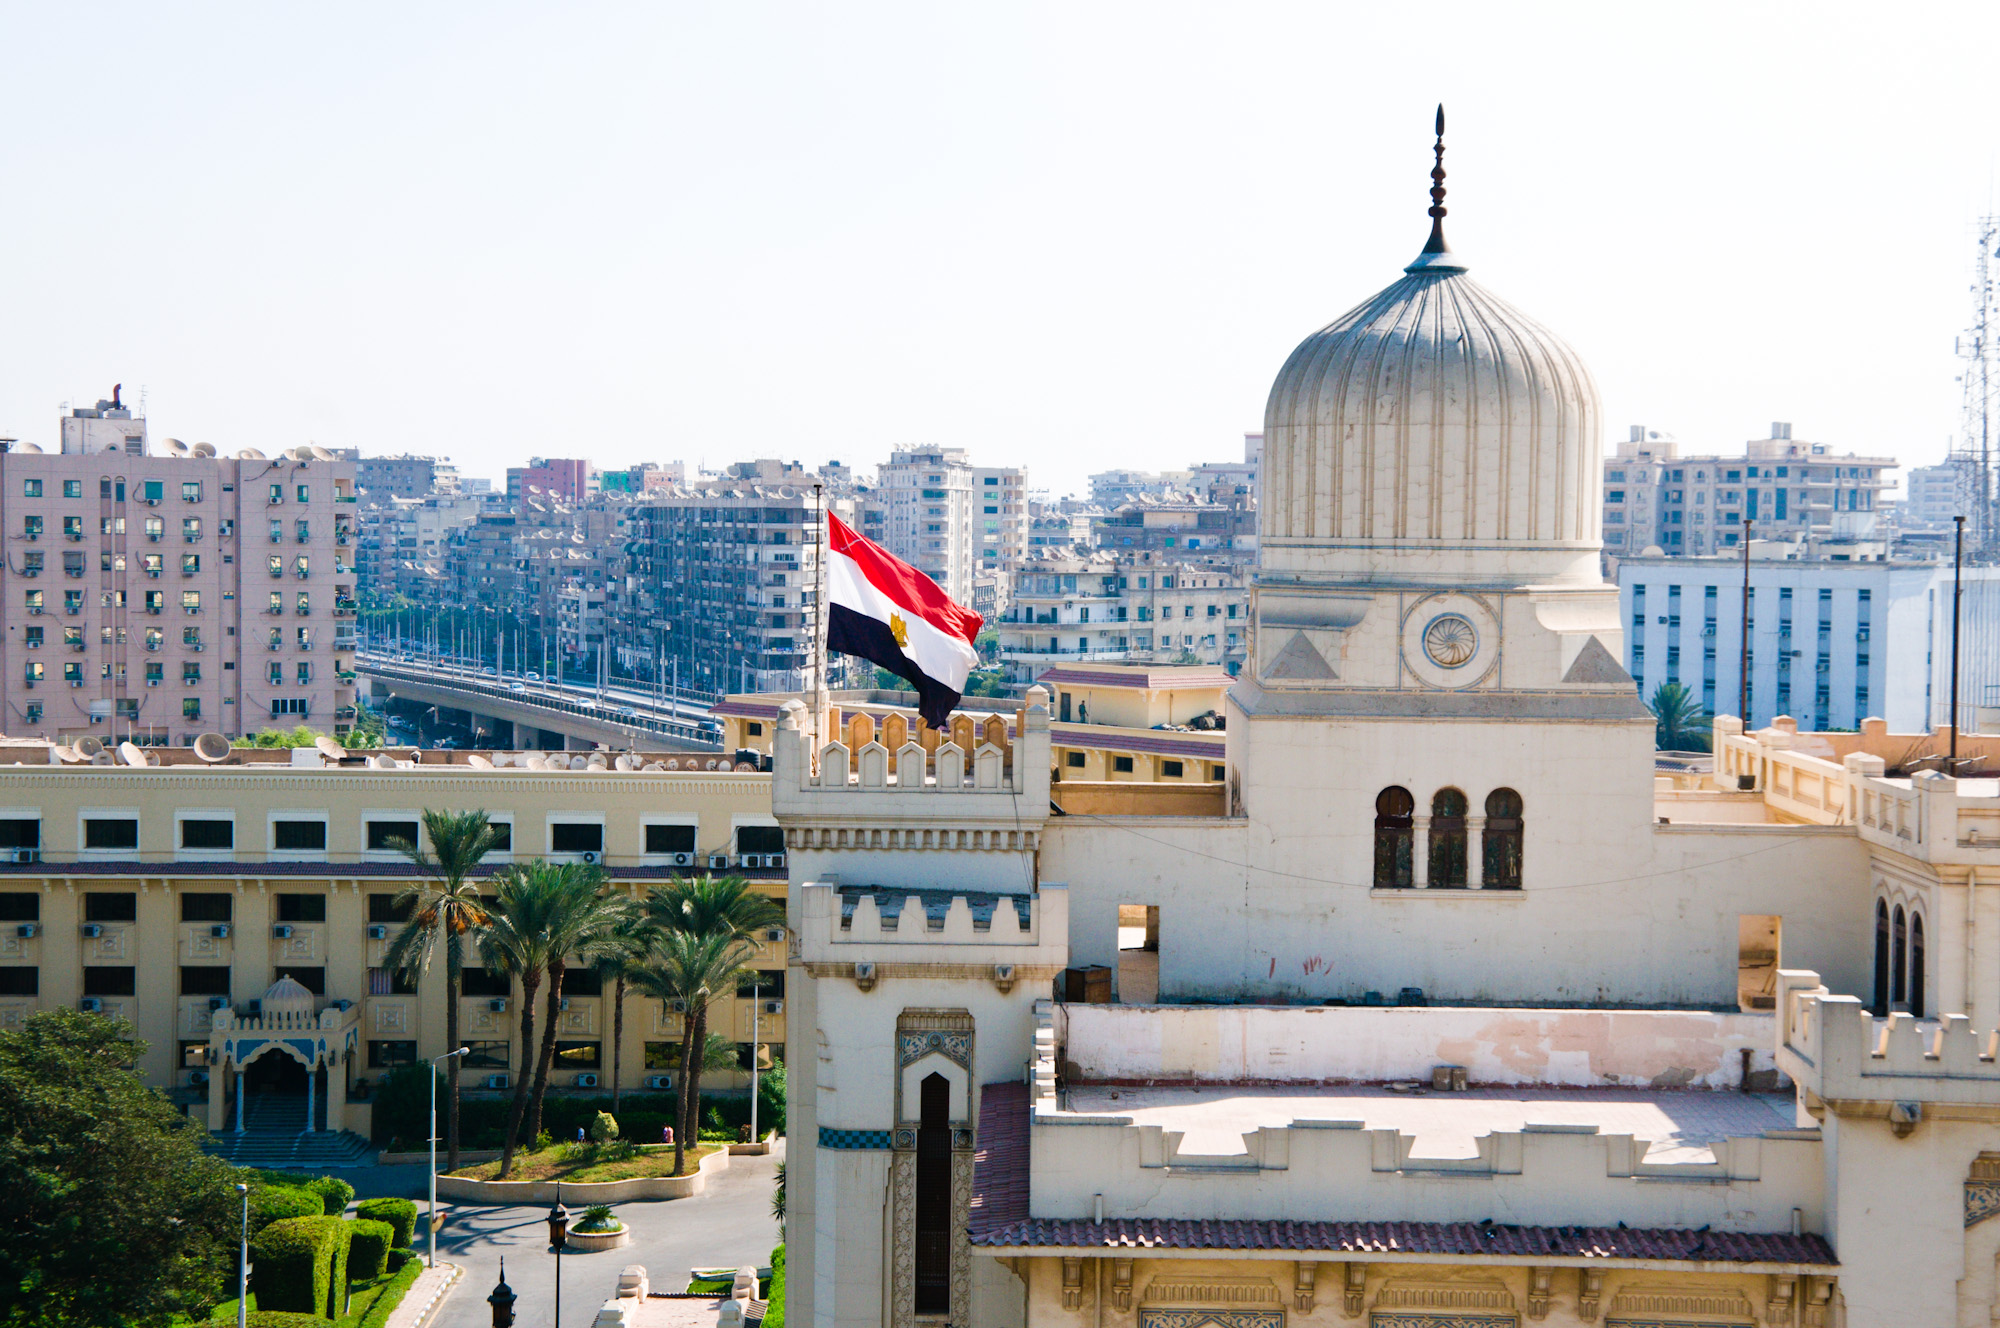 Cairo, Egypt (photo credit: Mitch Altman/flickr)